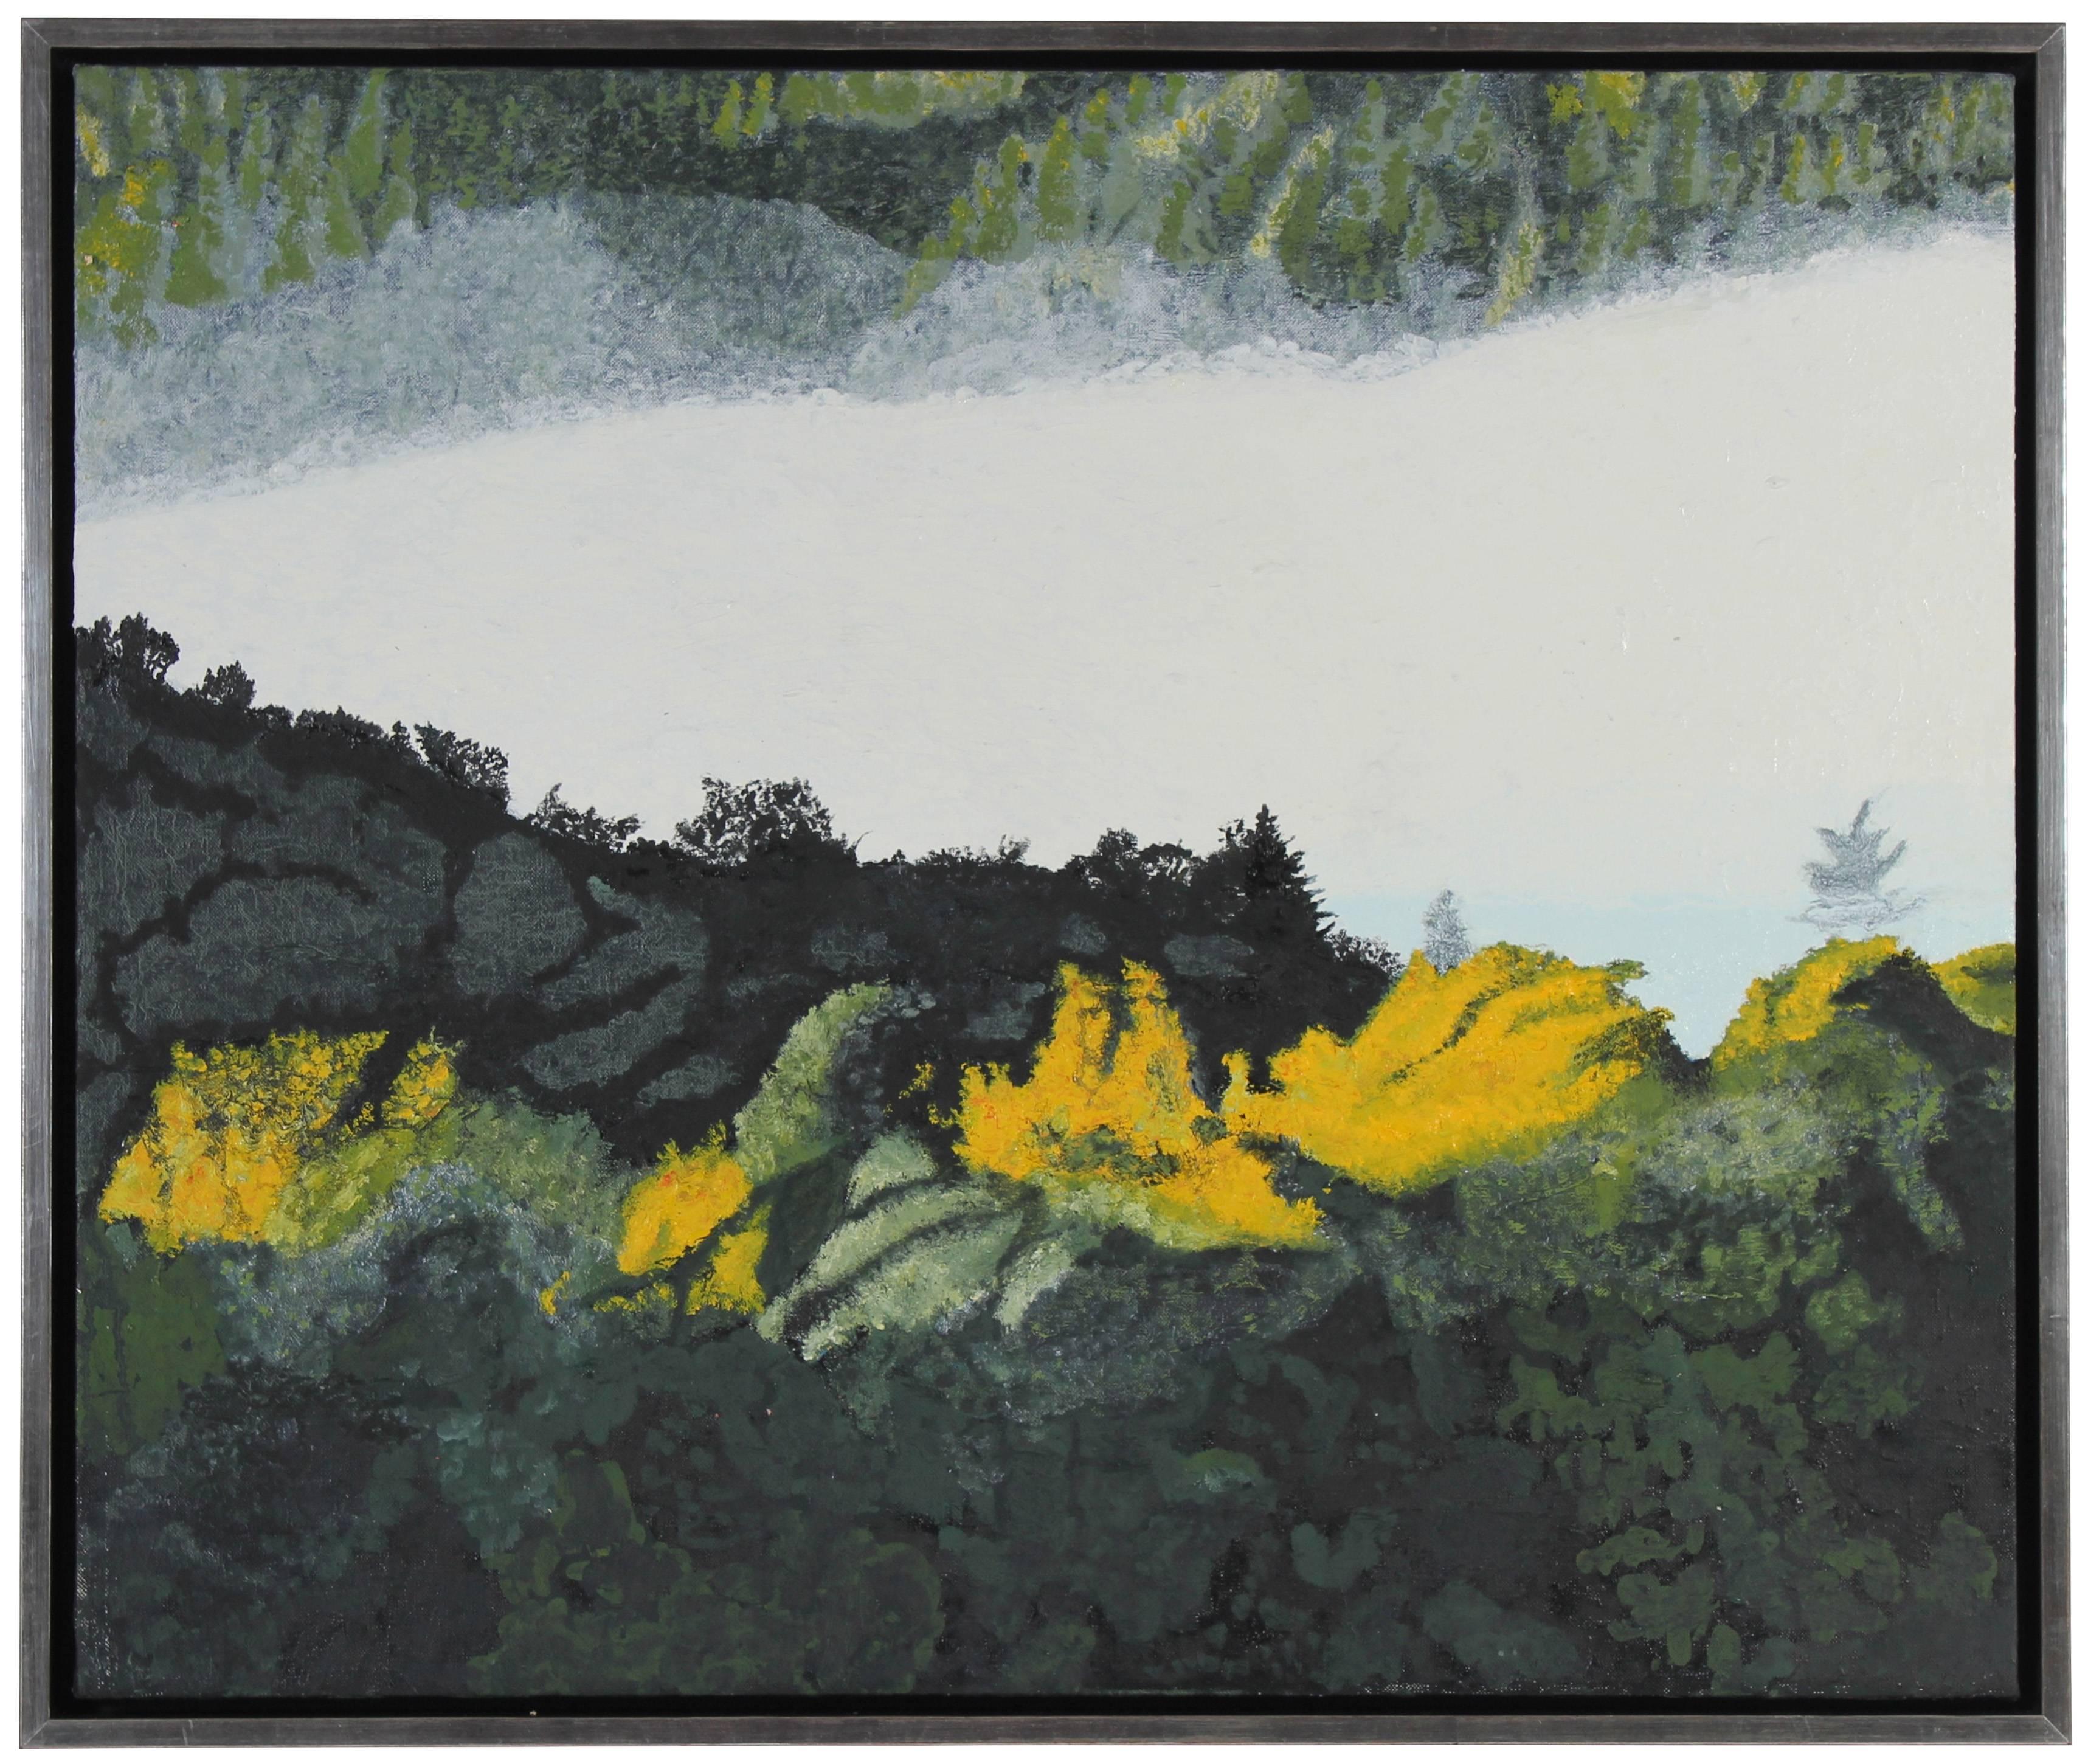 Gaétan Caron Abstract Painting - "Autumn Rays at Dawn" California Coastal Fog Fall Oil Landscape, 2014